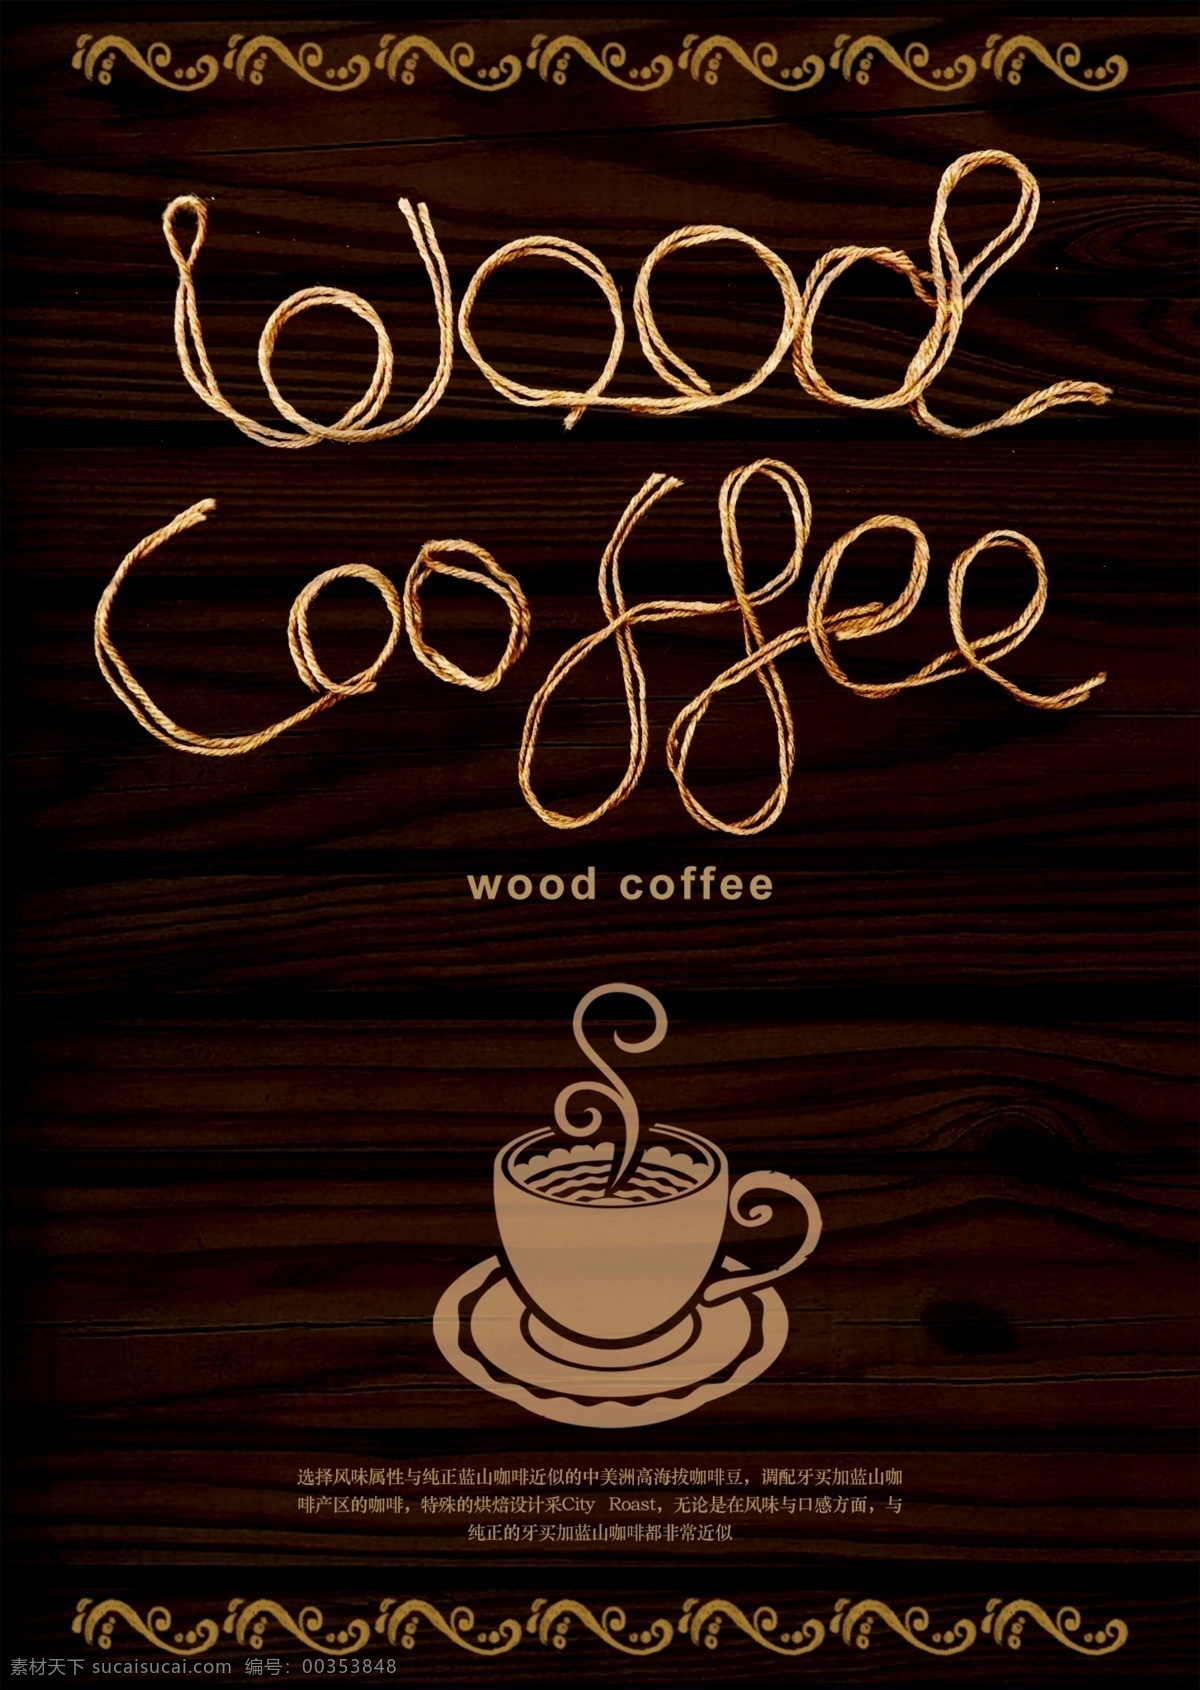 创意咖啡海报 创意咖啡 咖啡厅 木纹背景 绳子字母 创意 店招 分层